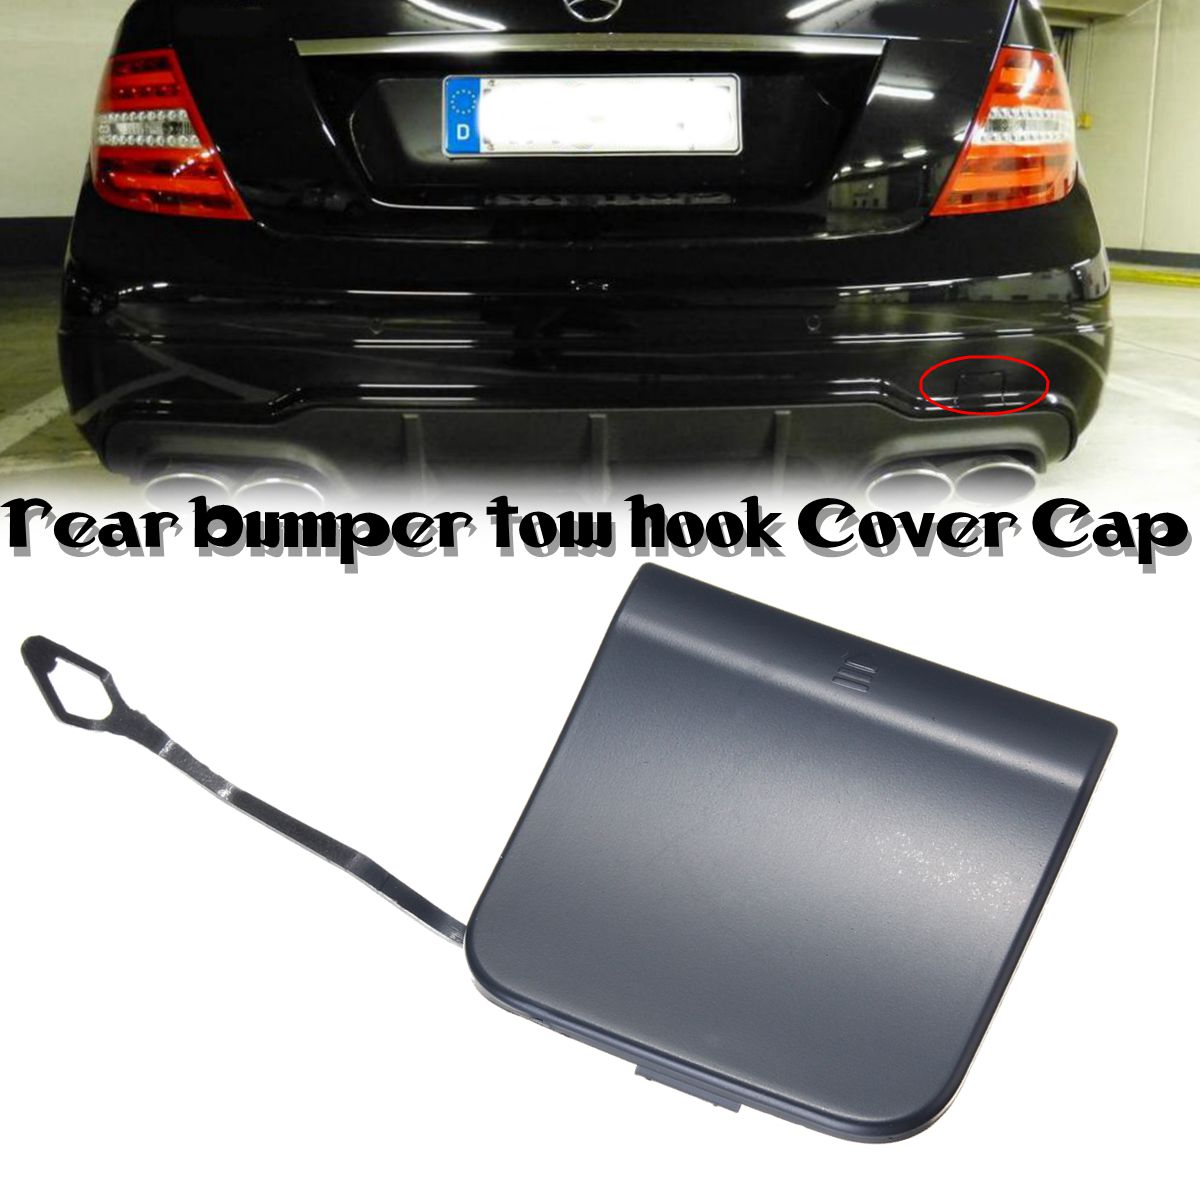 Rear Bumper Tow Hook Cover Cap For MercedesBenz W204 C350